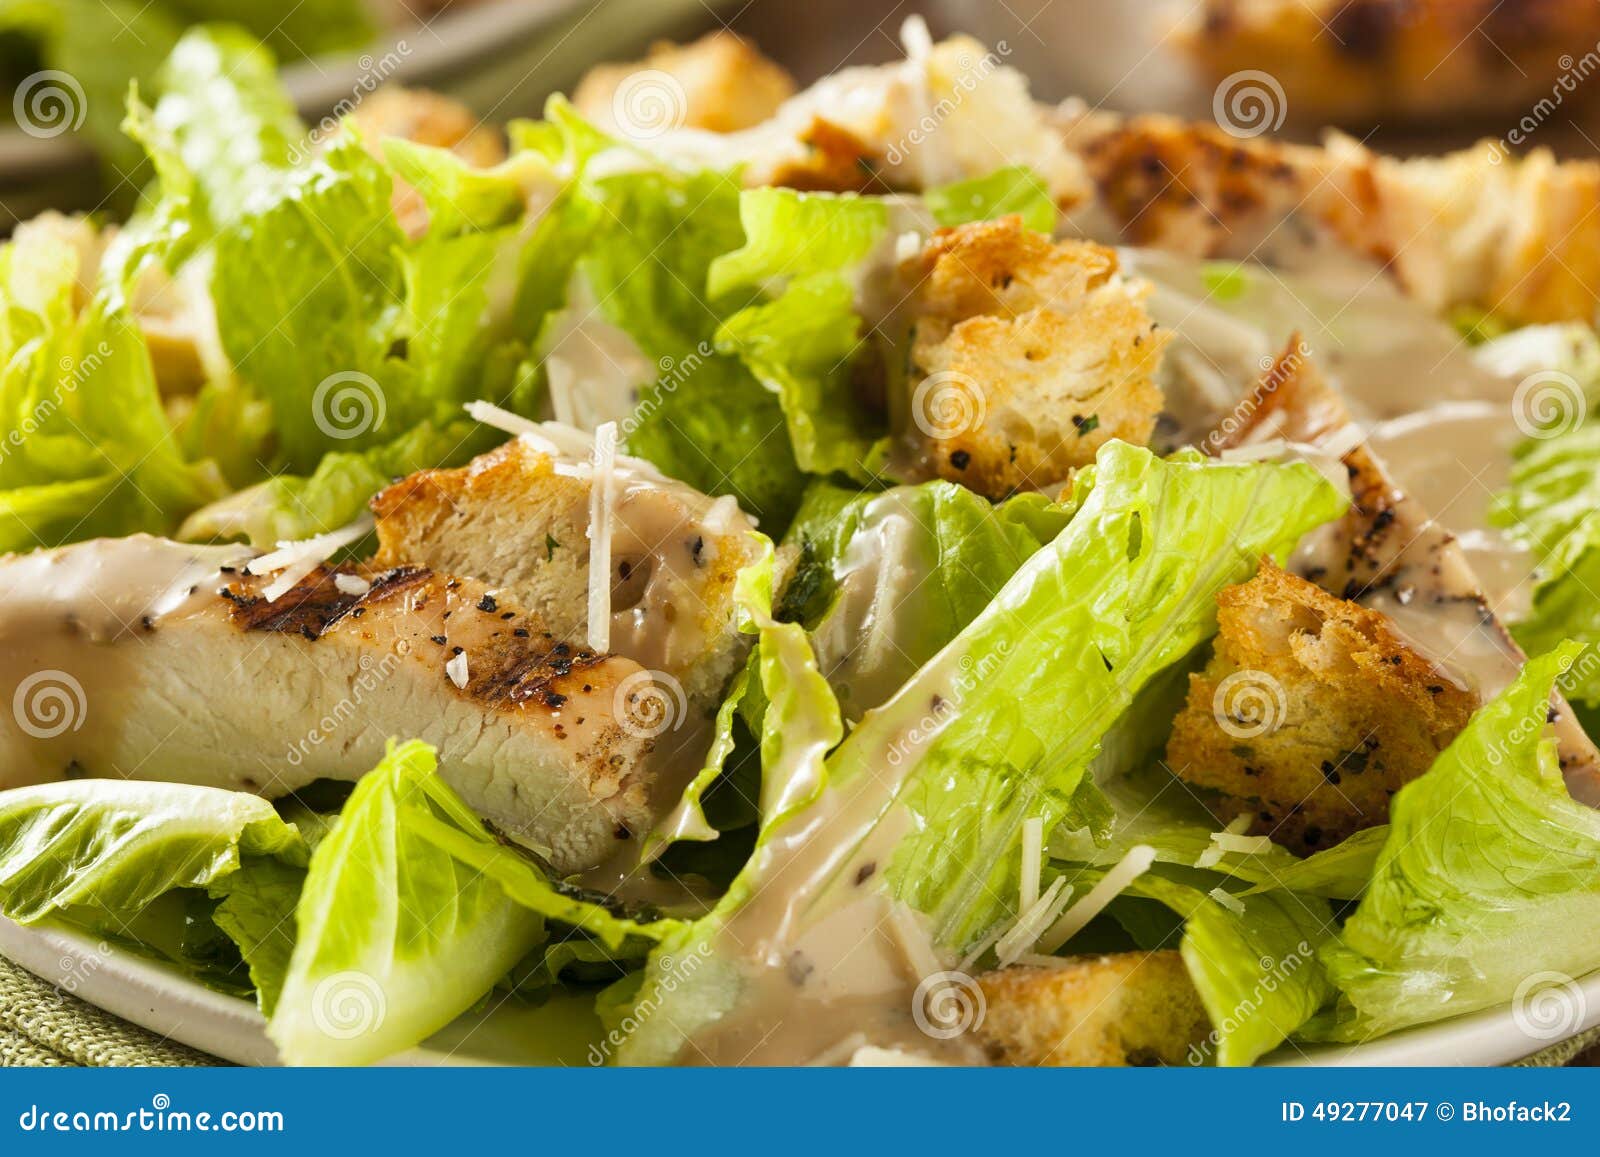 healthy grilled chicken caesar salad